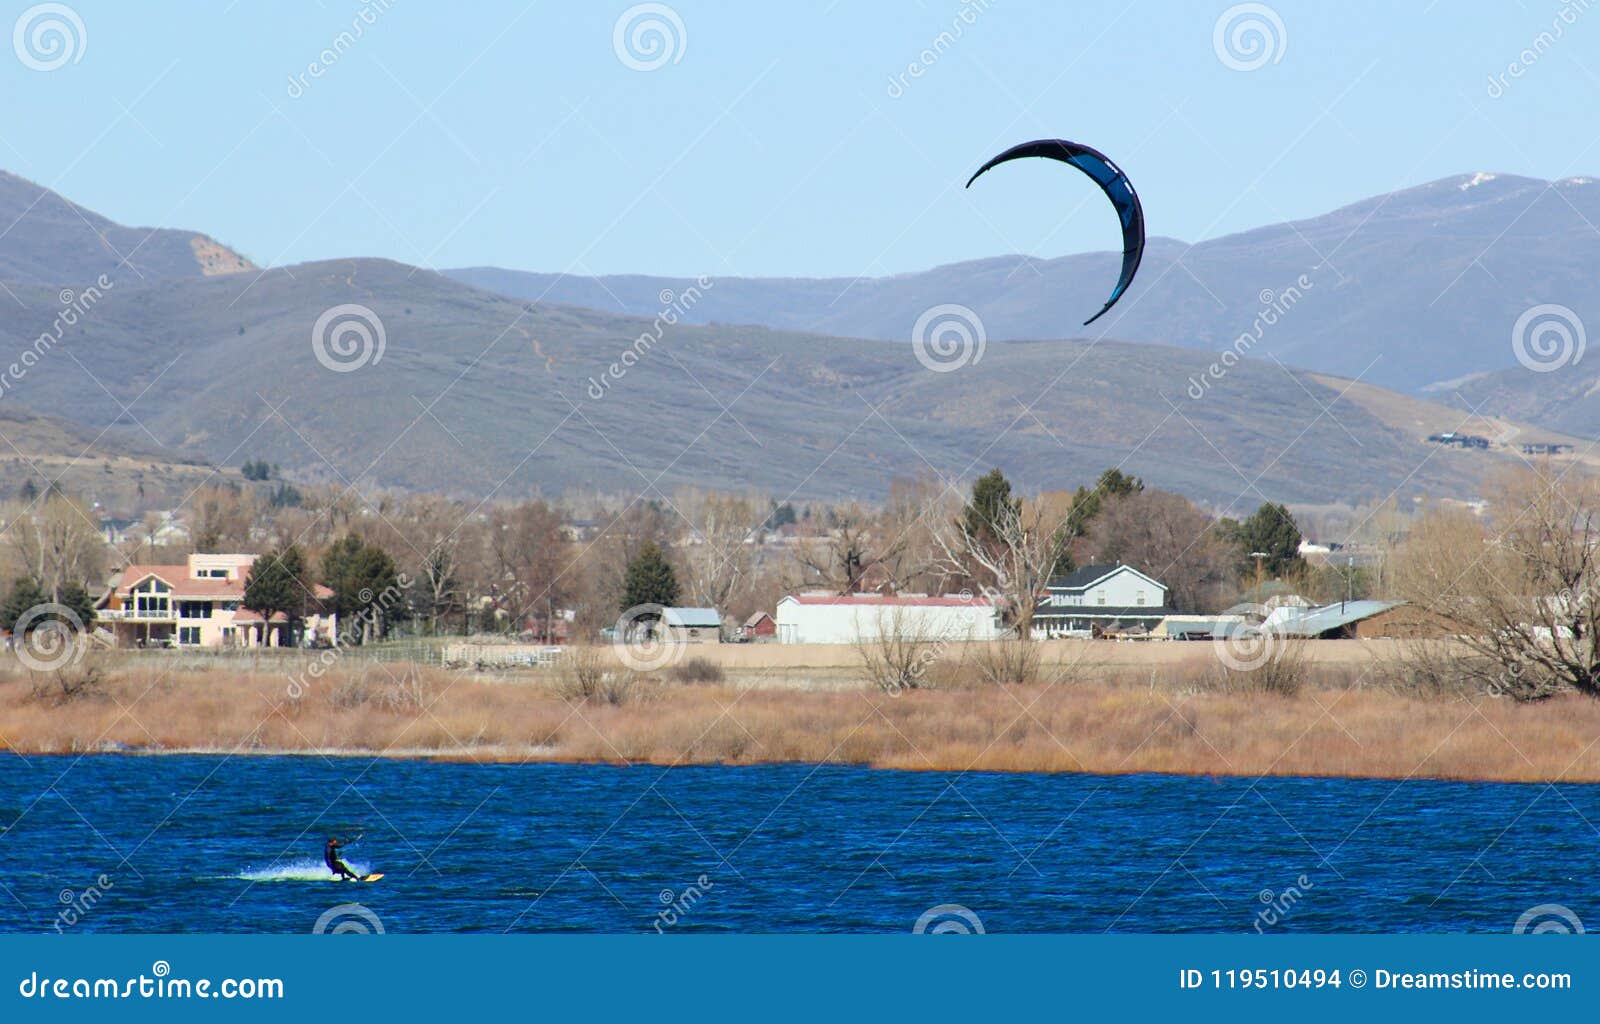 Kite Surfing Deer Creek Reservoir Two Kite Surfers Enjoying Spring Deer Creek Reservoir Middle Mountain 119510494 